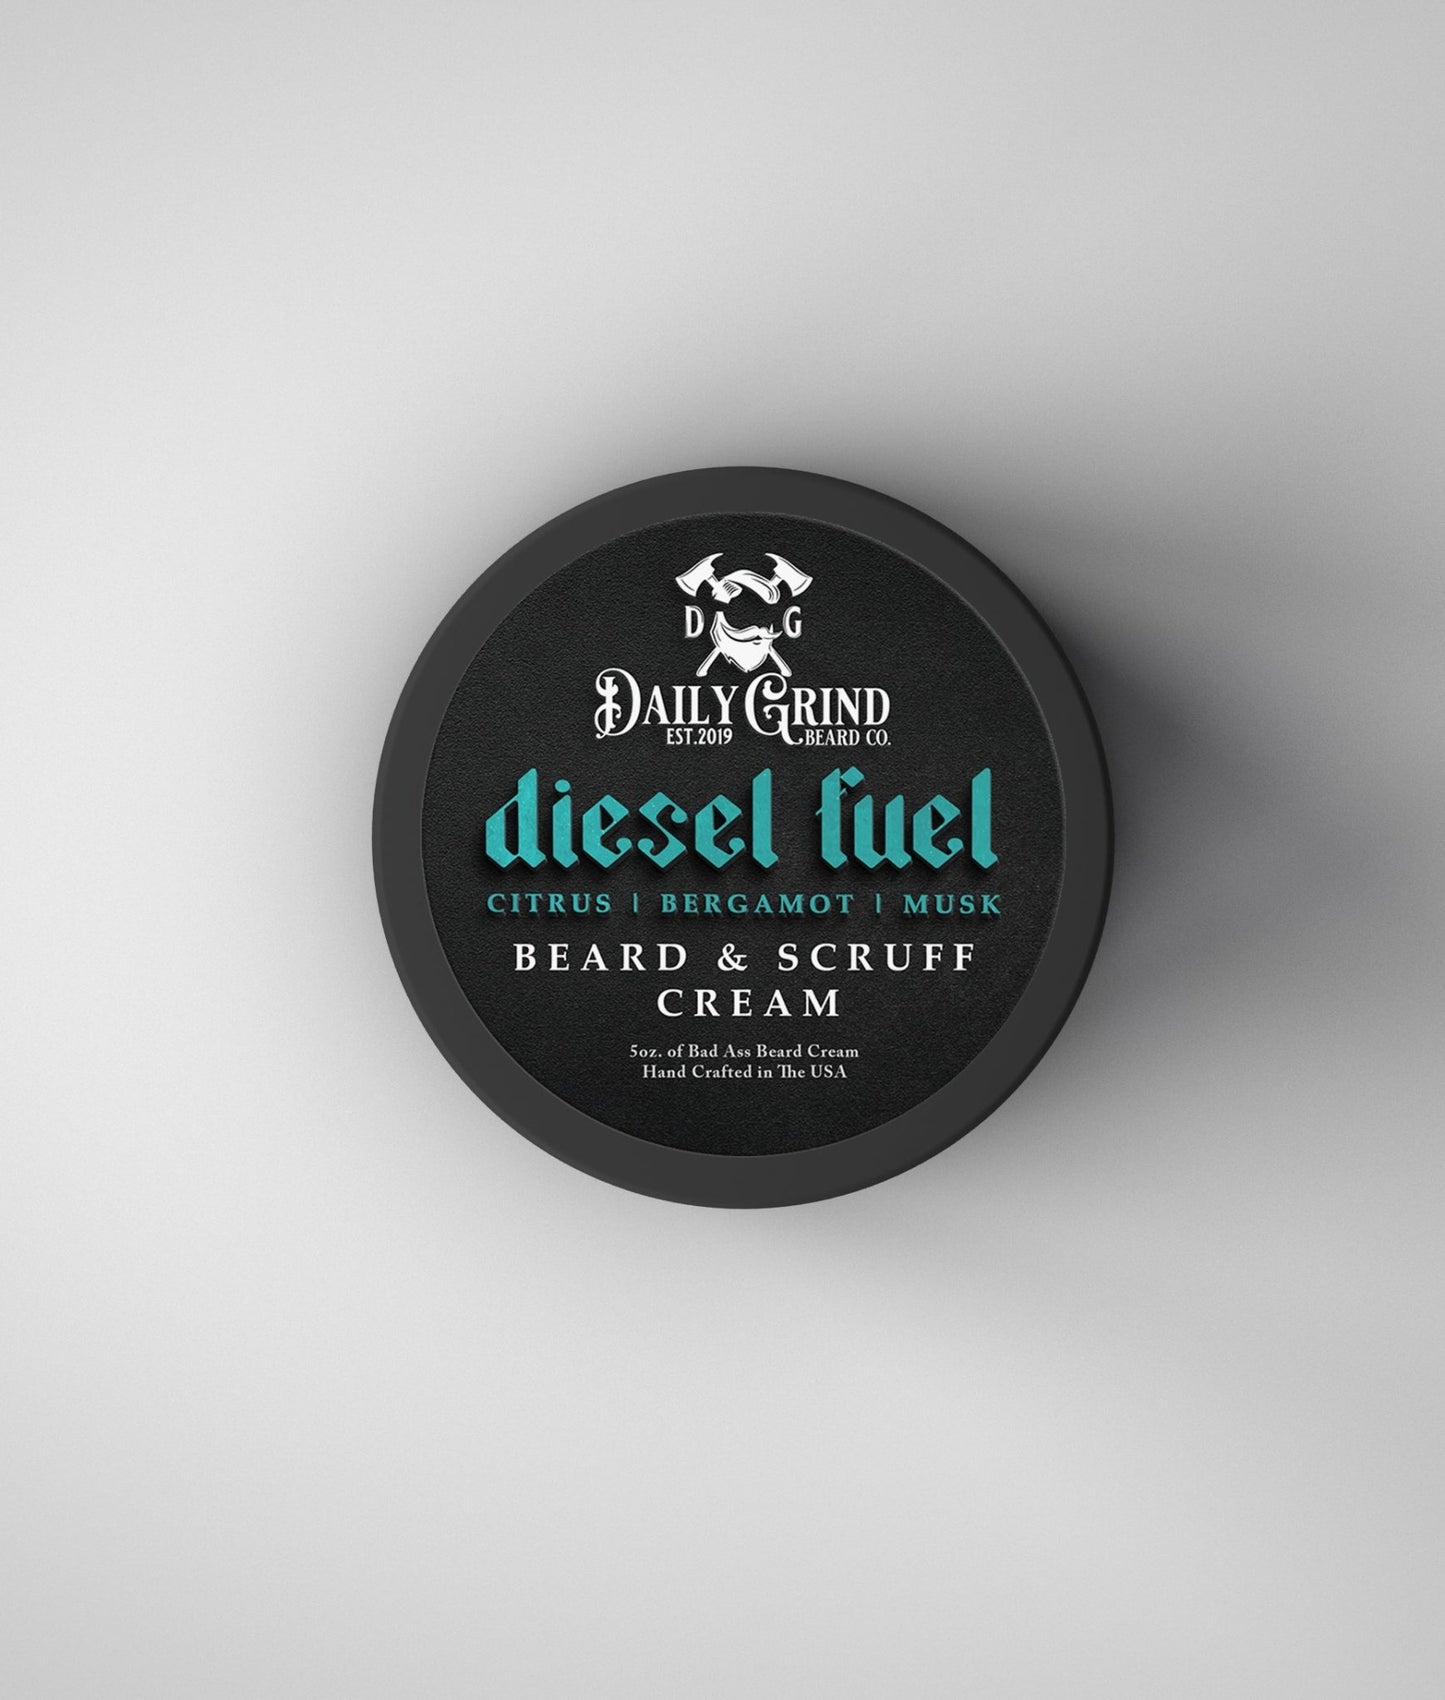 Diesel Fuel - Fresh, Floral, Woodsy, Beard & Scruff Cream - Daily Grind